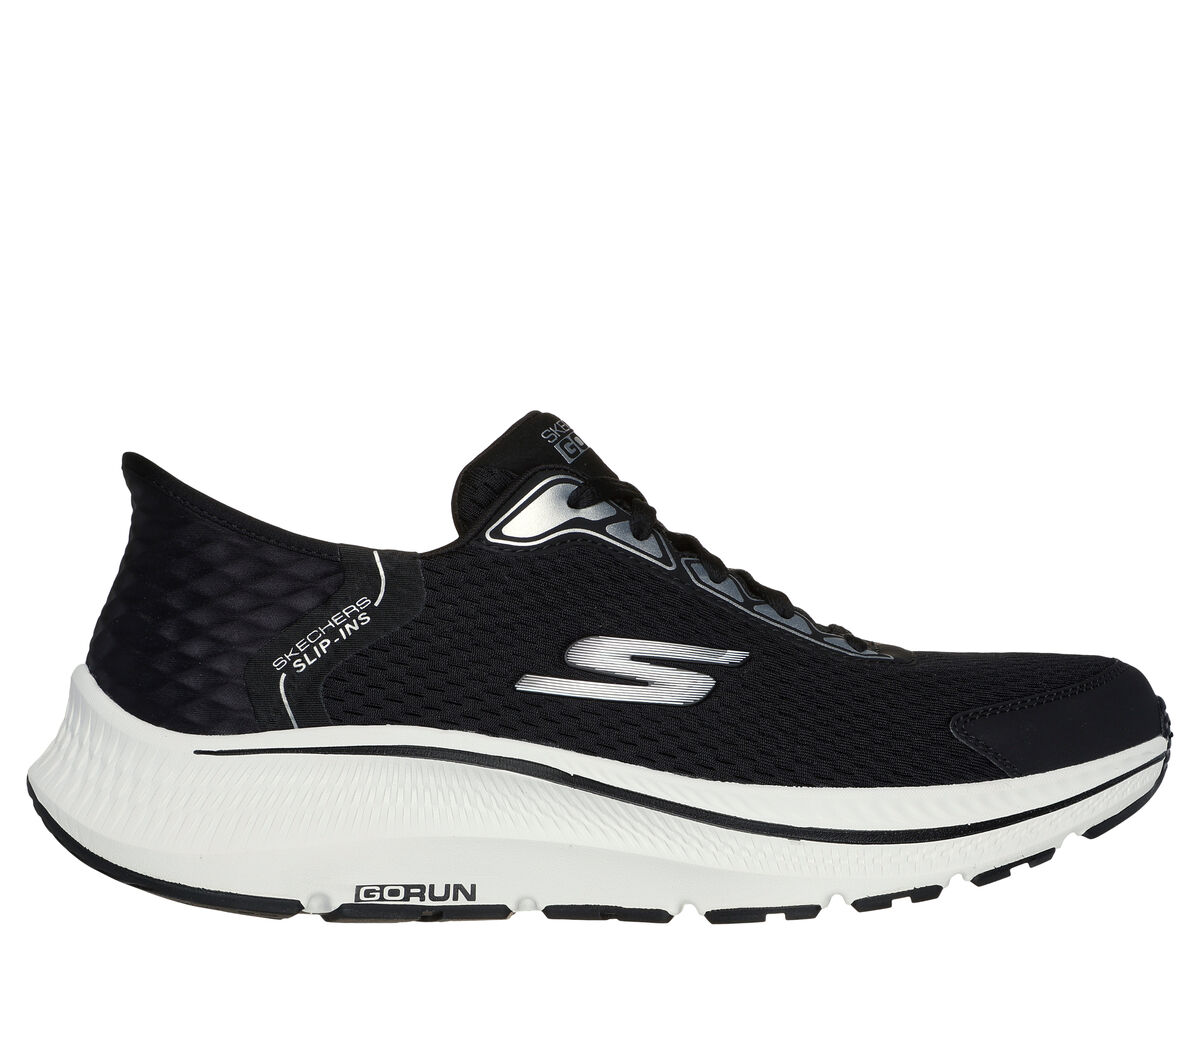 SKECHERS Performance Go Walk Flex - Sky Breeze Casual Slip-On Walking  Sneaker (Black) Women's Shoes - Yahoo Shopping